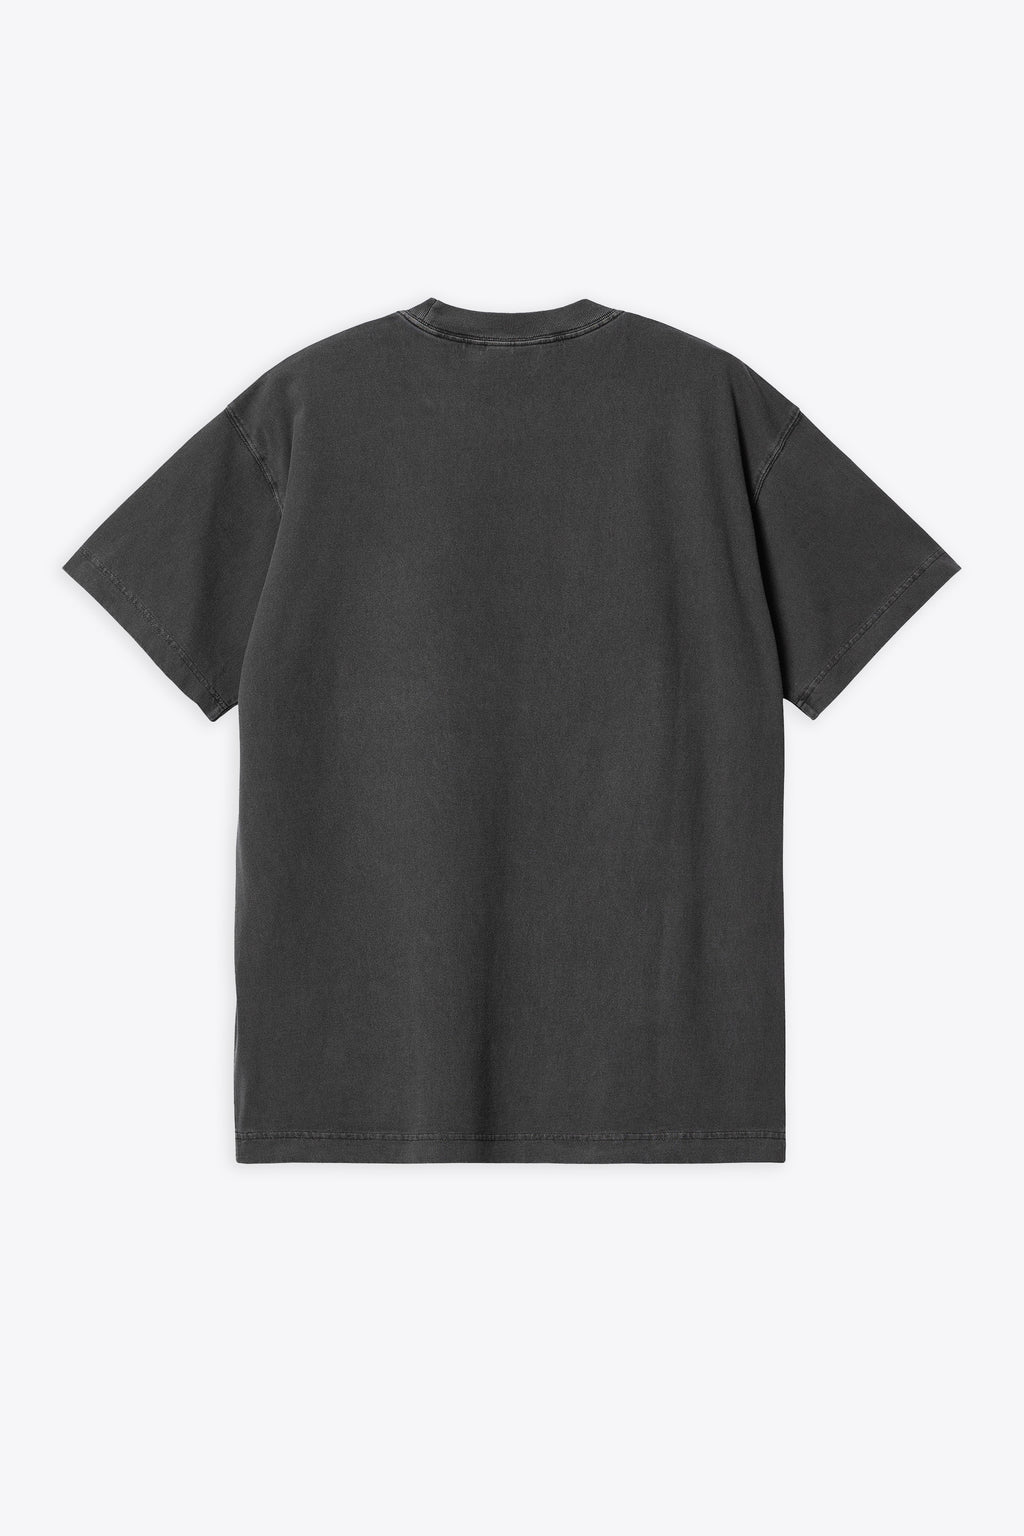 alt-image__T-shirt-in-cotone-lavato-grigio-antracite-con-logo-al-petto---S/S-Nelson-T-Shirt